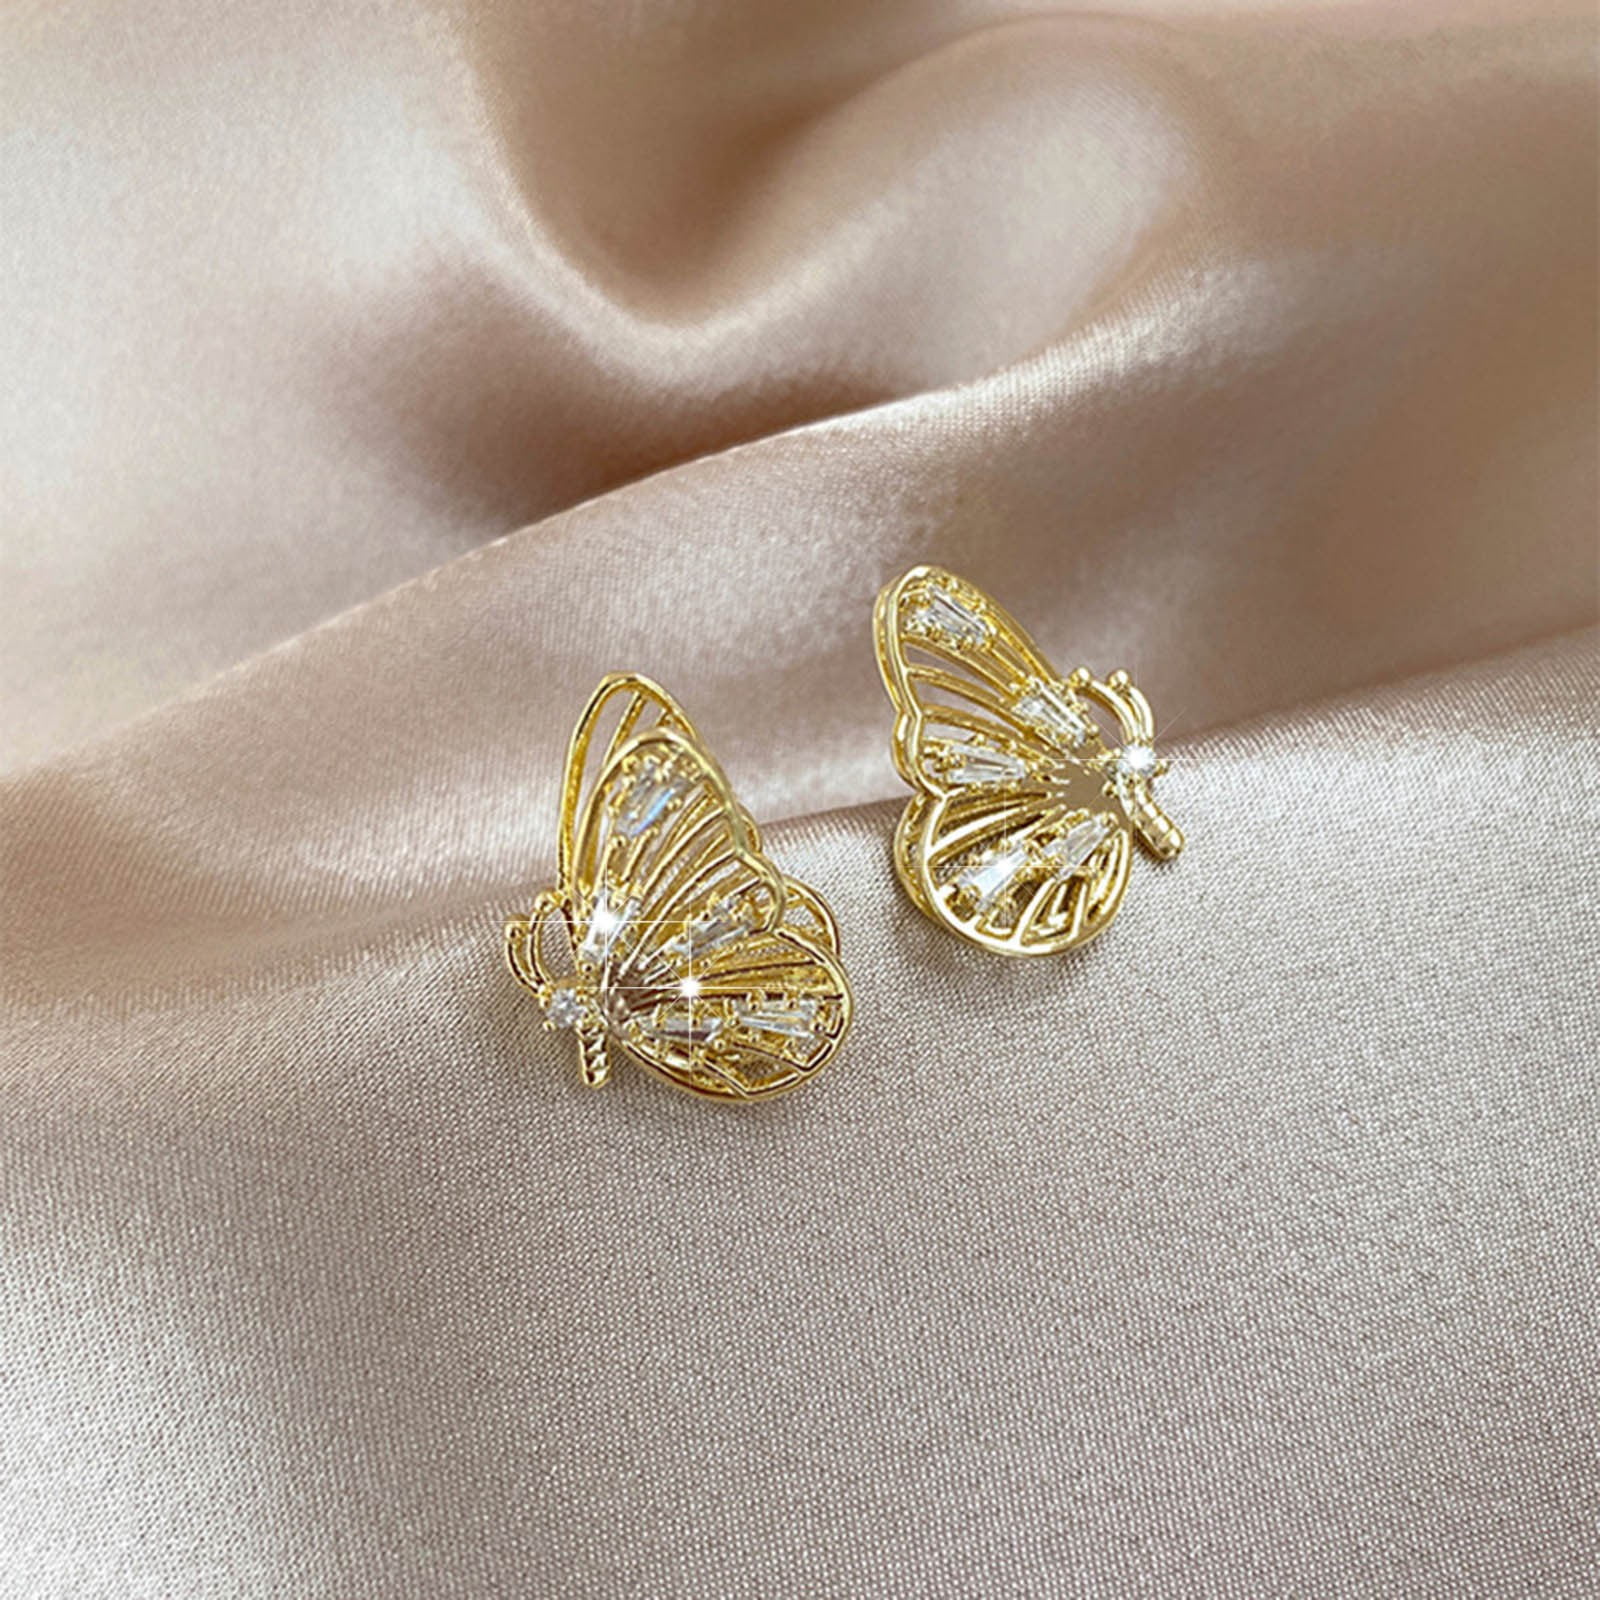 Butterfly Earring Stud With Zircon-24k Gold Plated earrings Studs